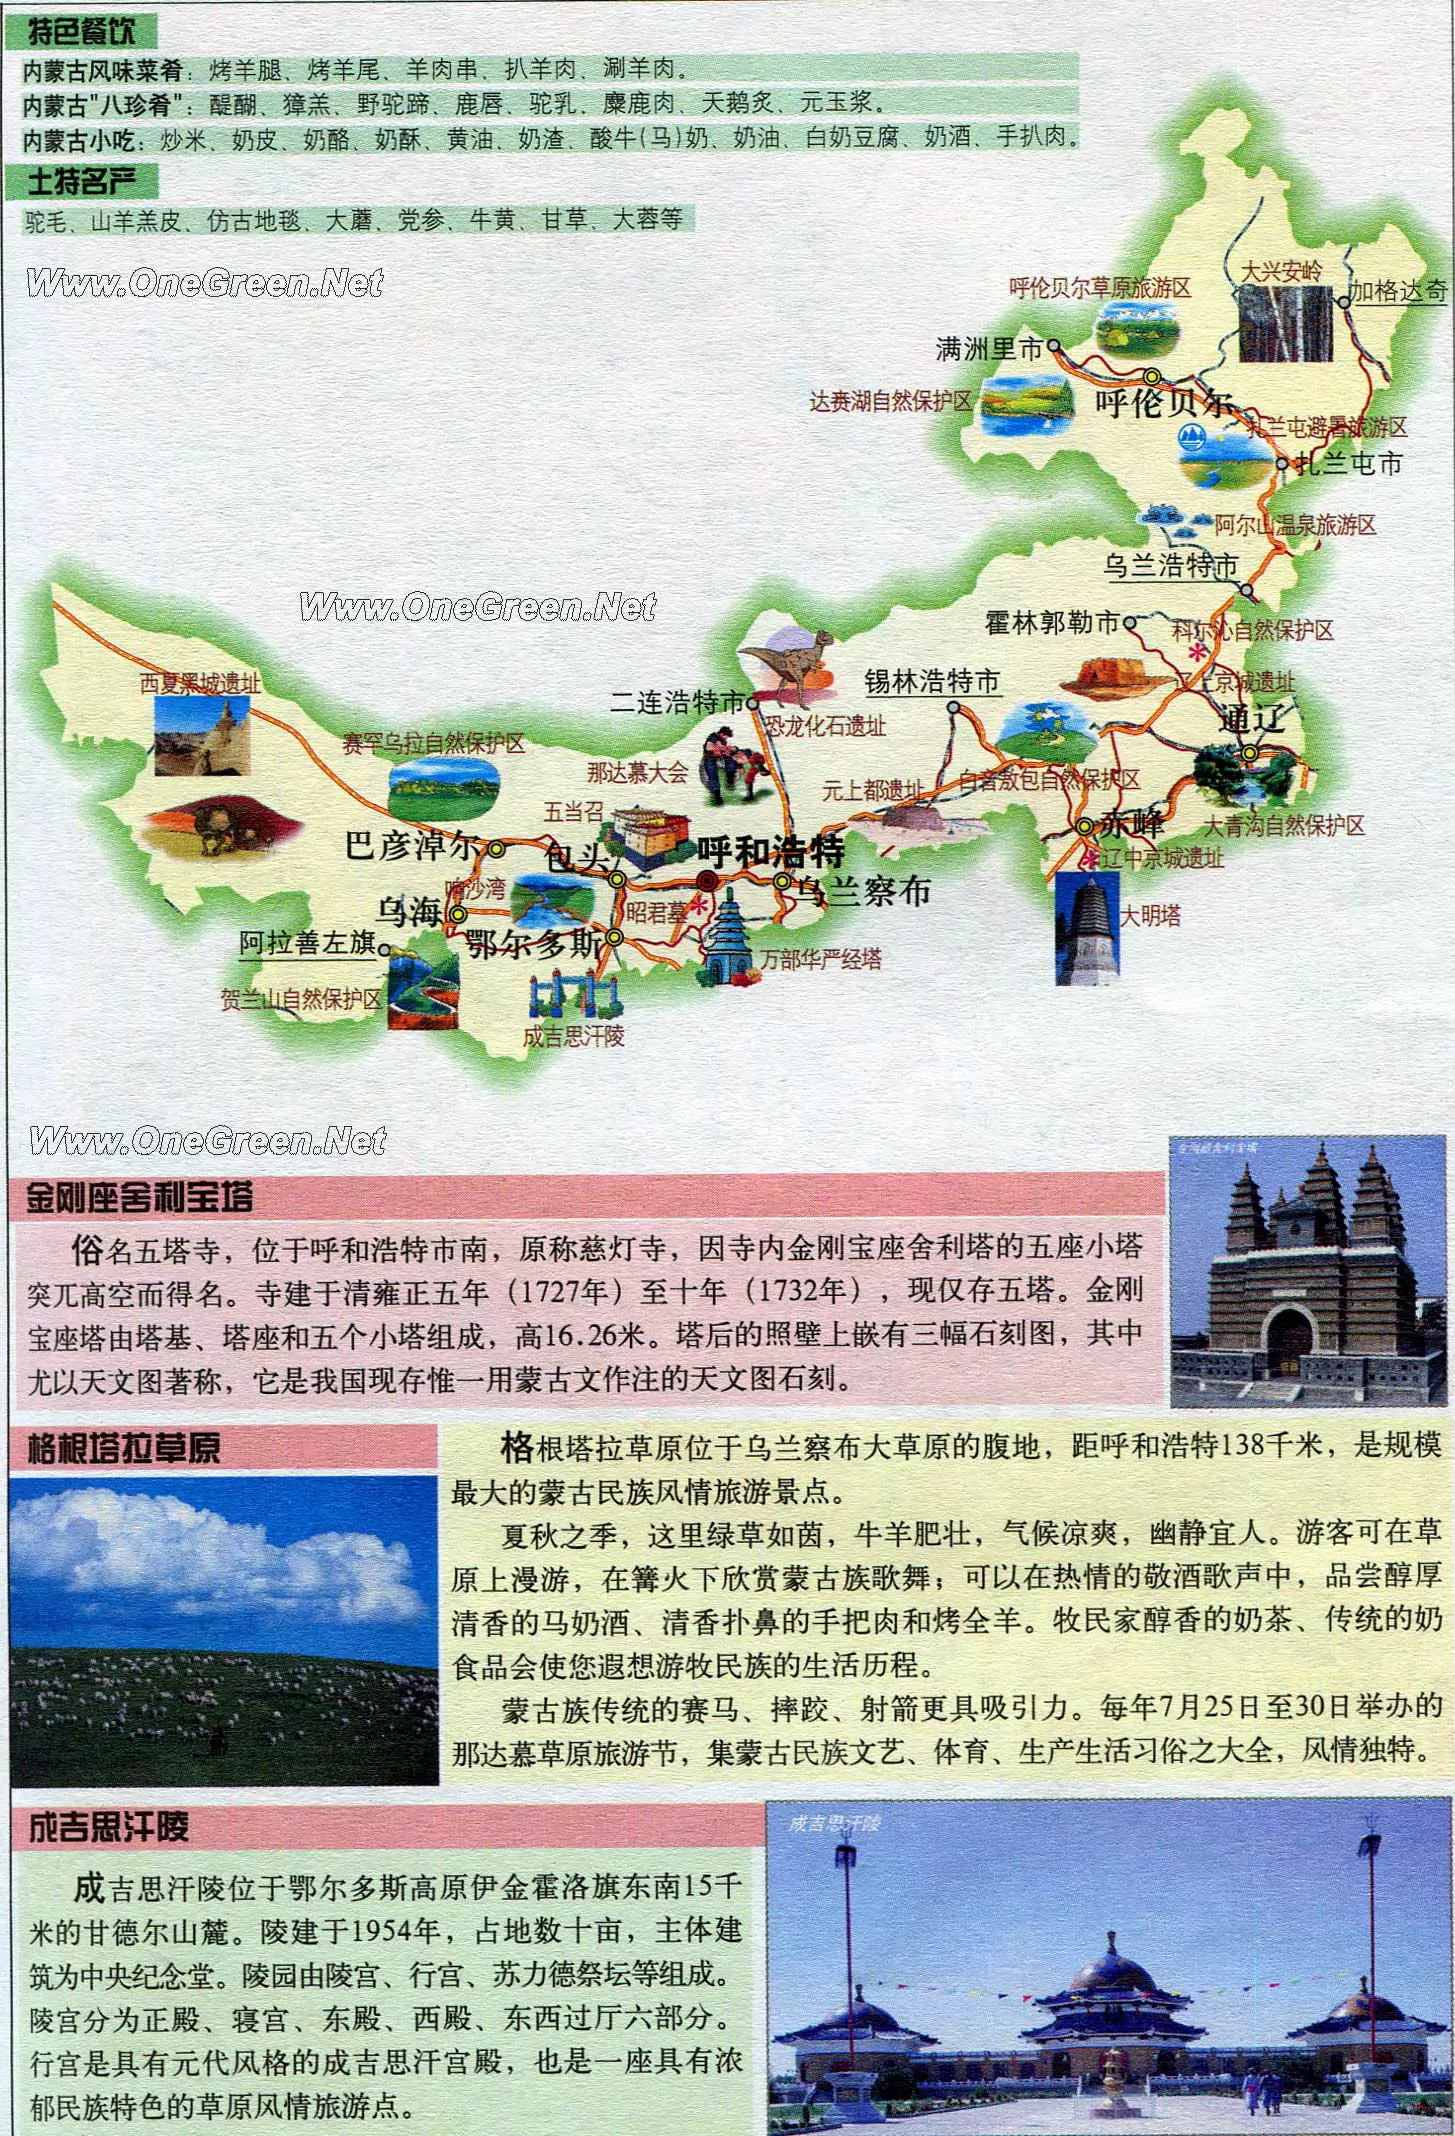 蒙古地图中英文对照版全图 - 中英世界地图 - 地理教师网